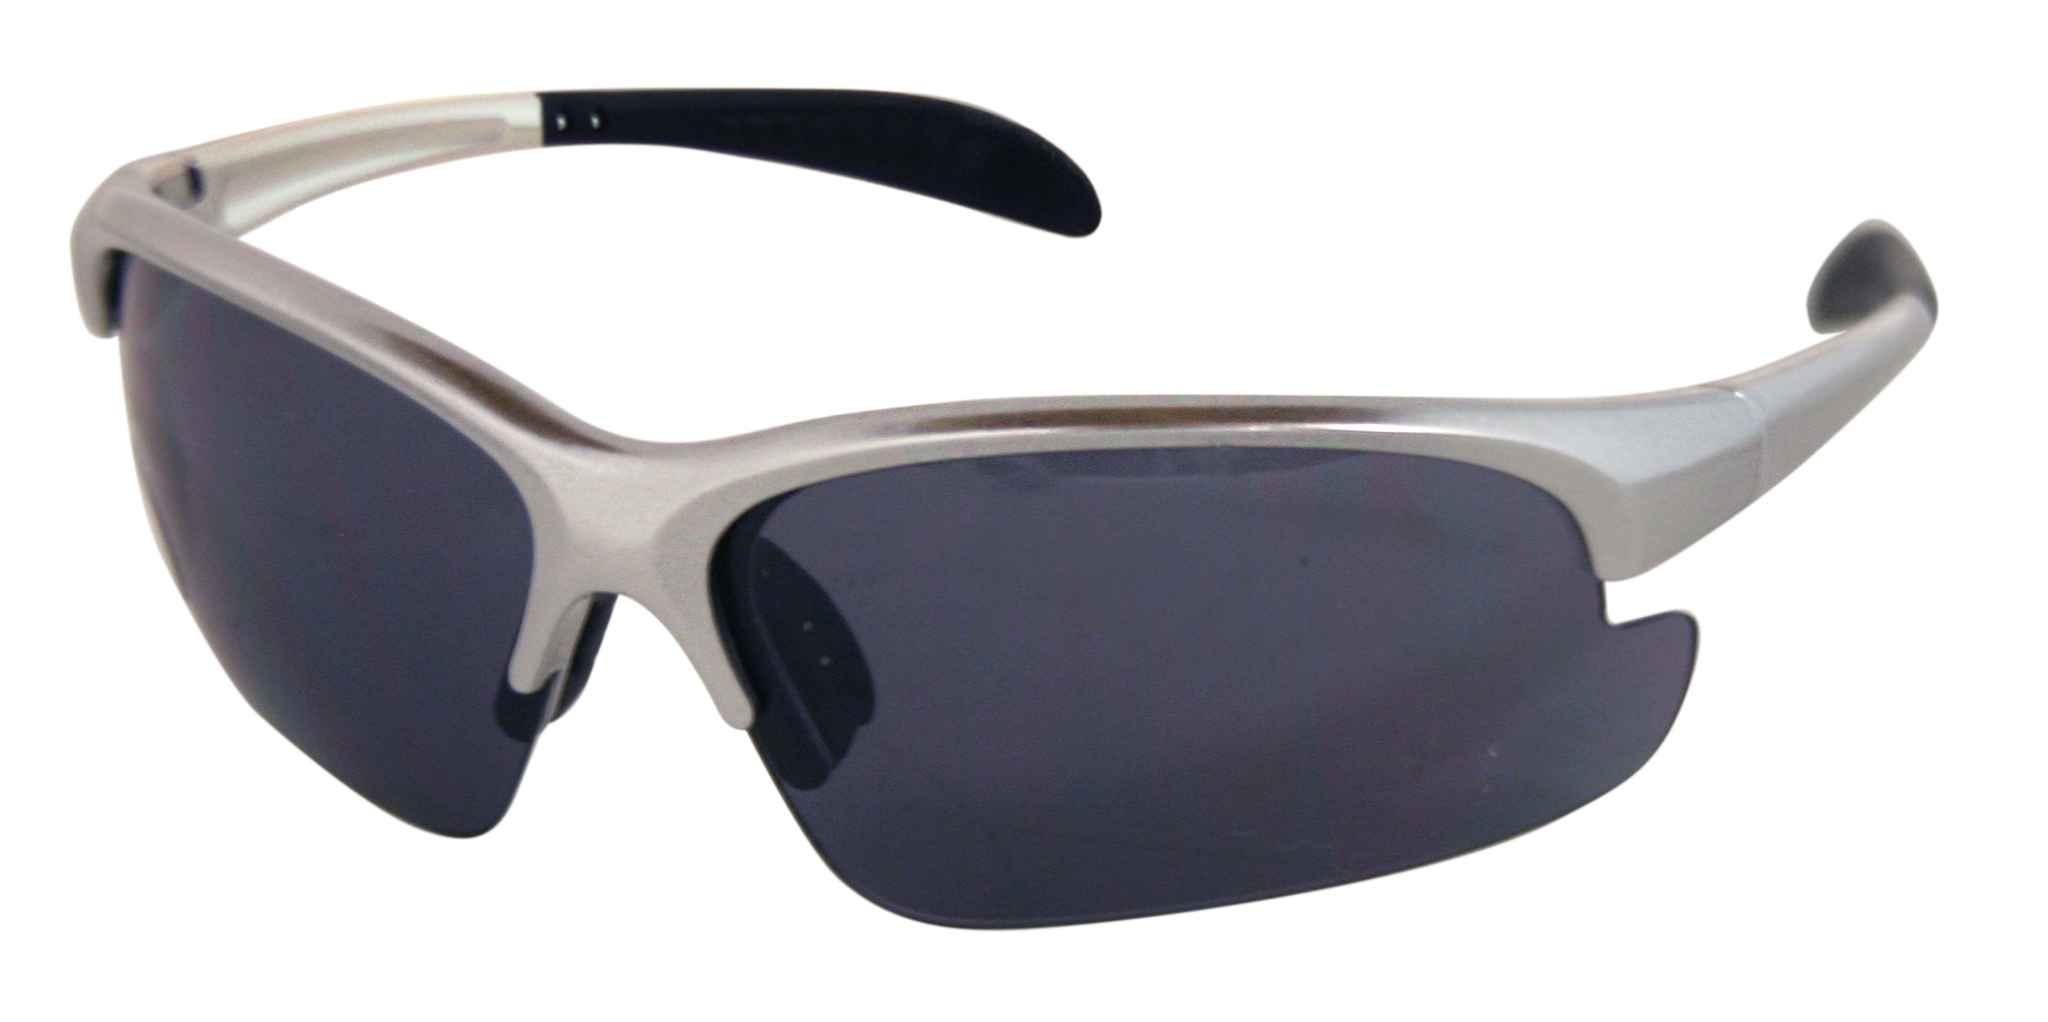 STRATOS 2 Sportbrille, matt metal - Hauptansicht